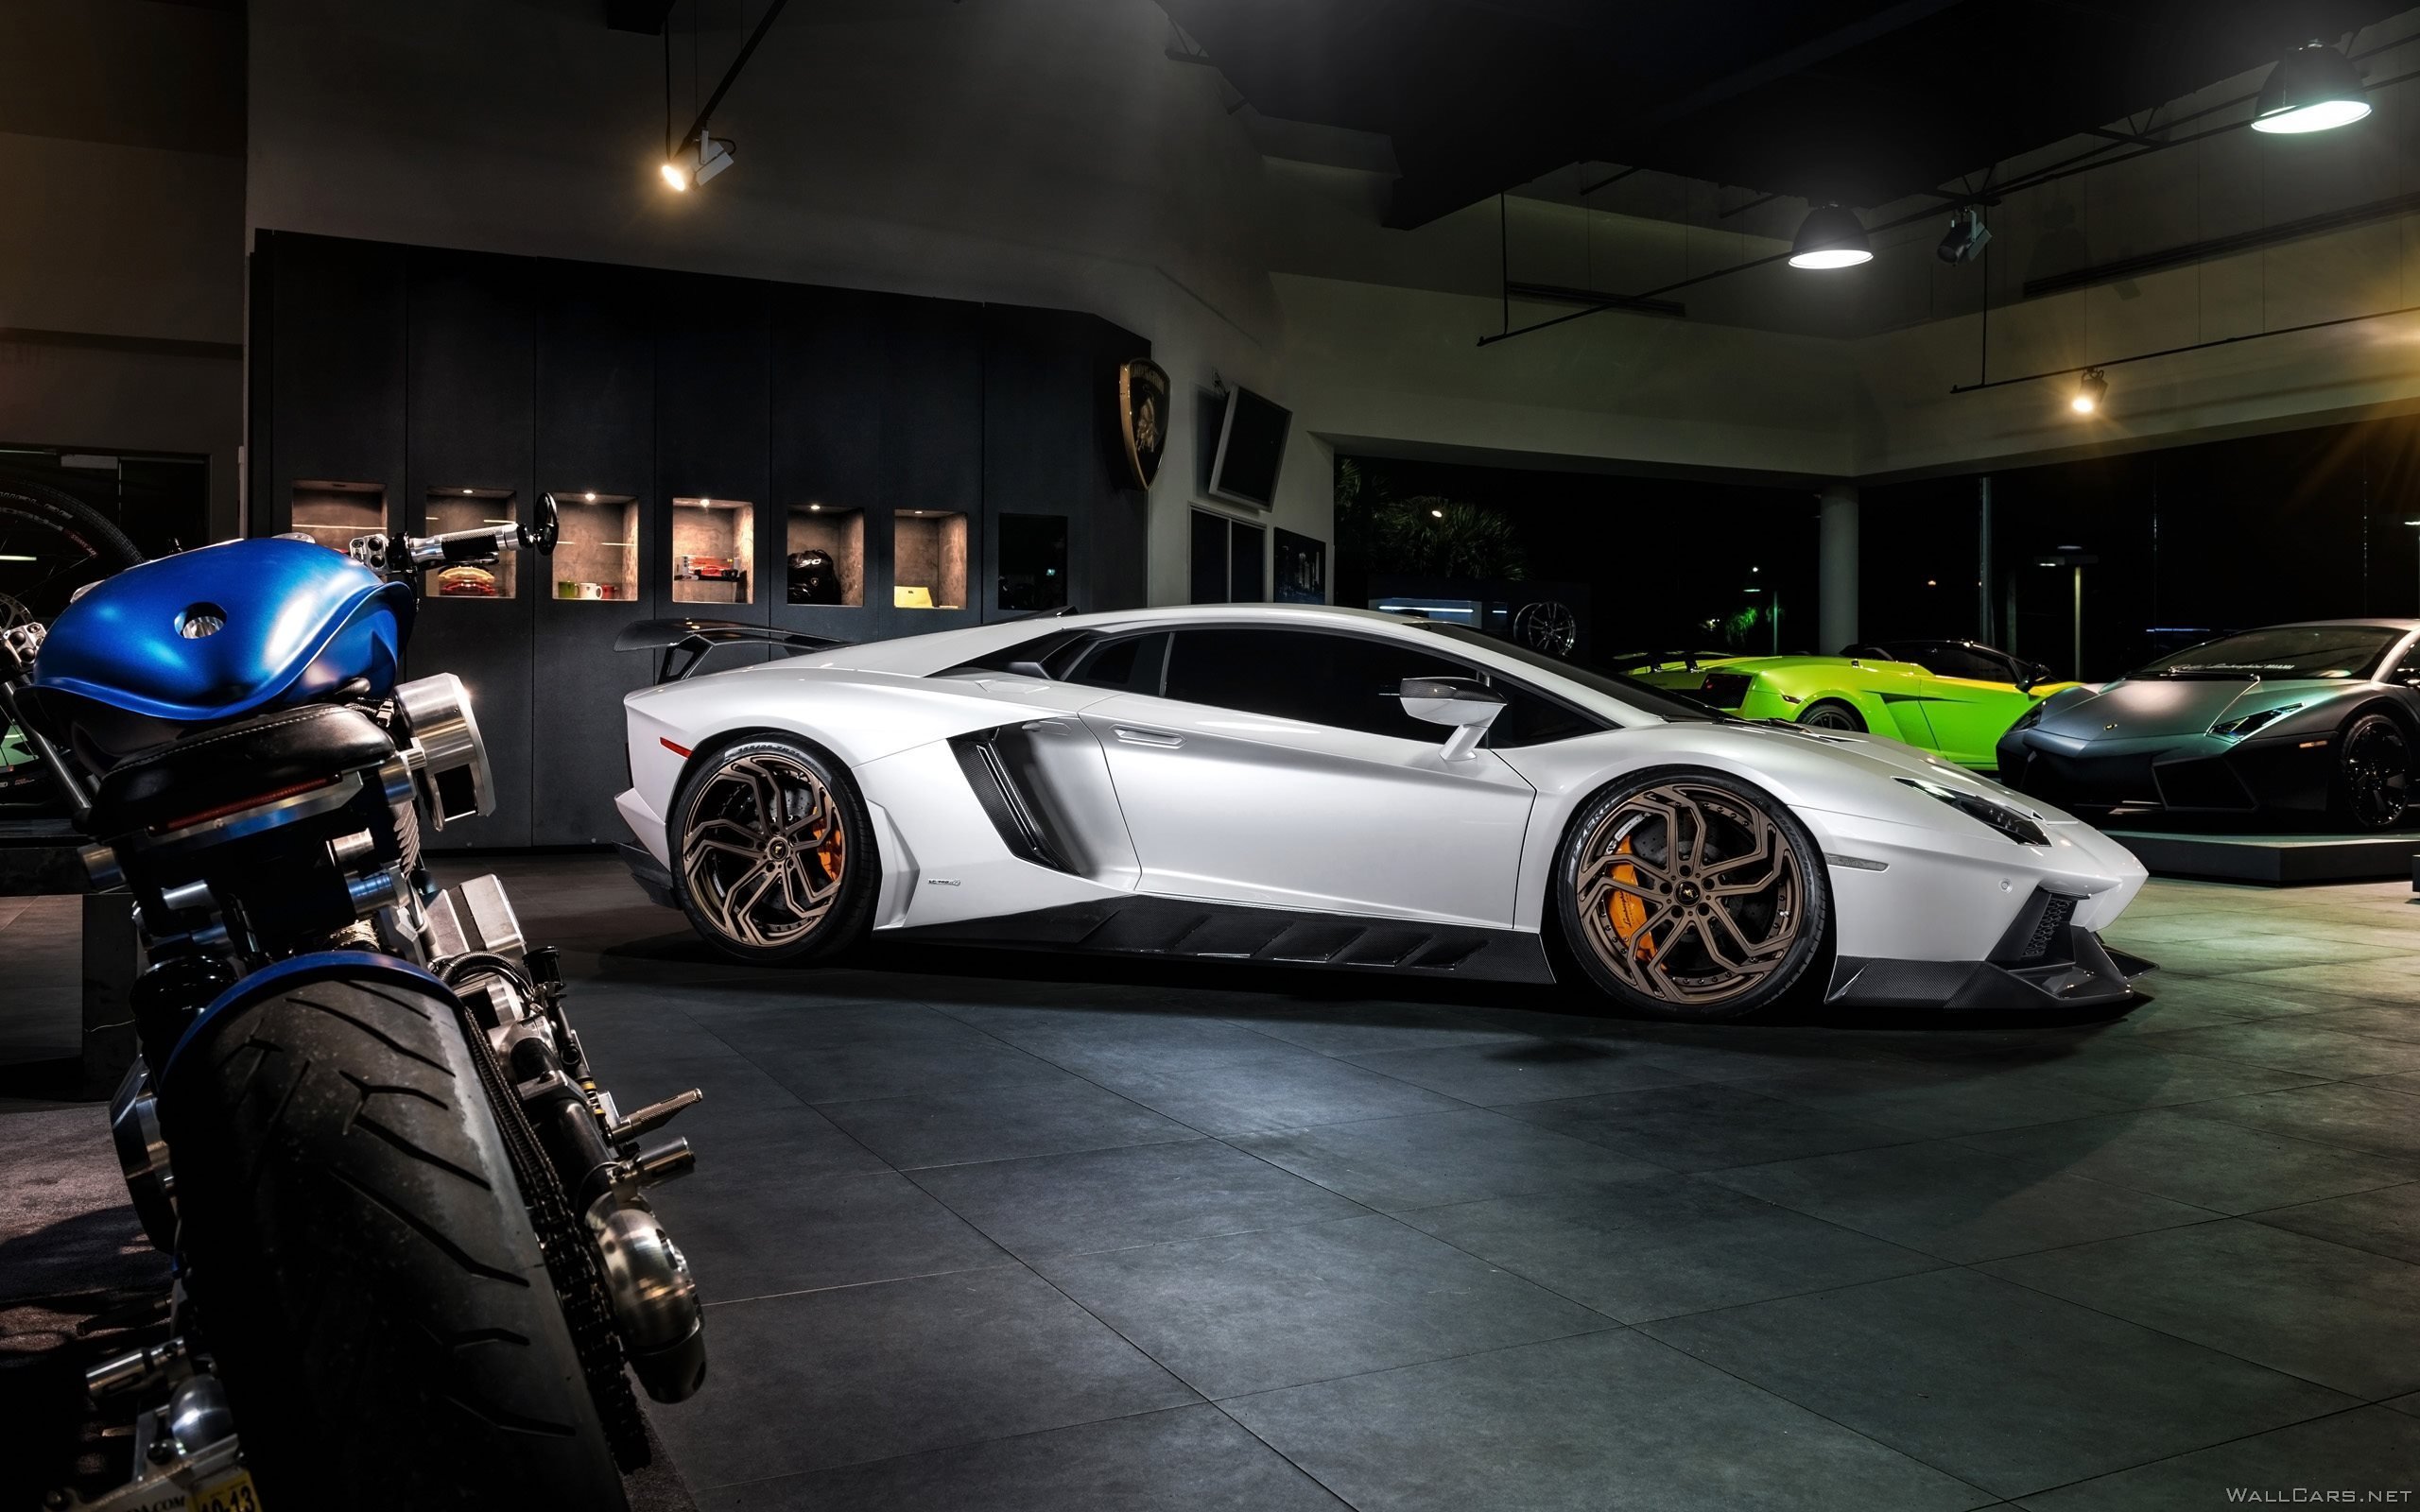 Lamborghini And Bike, HD Cars, 4k Wallpapers, Images ...